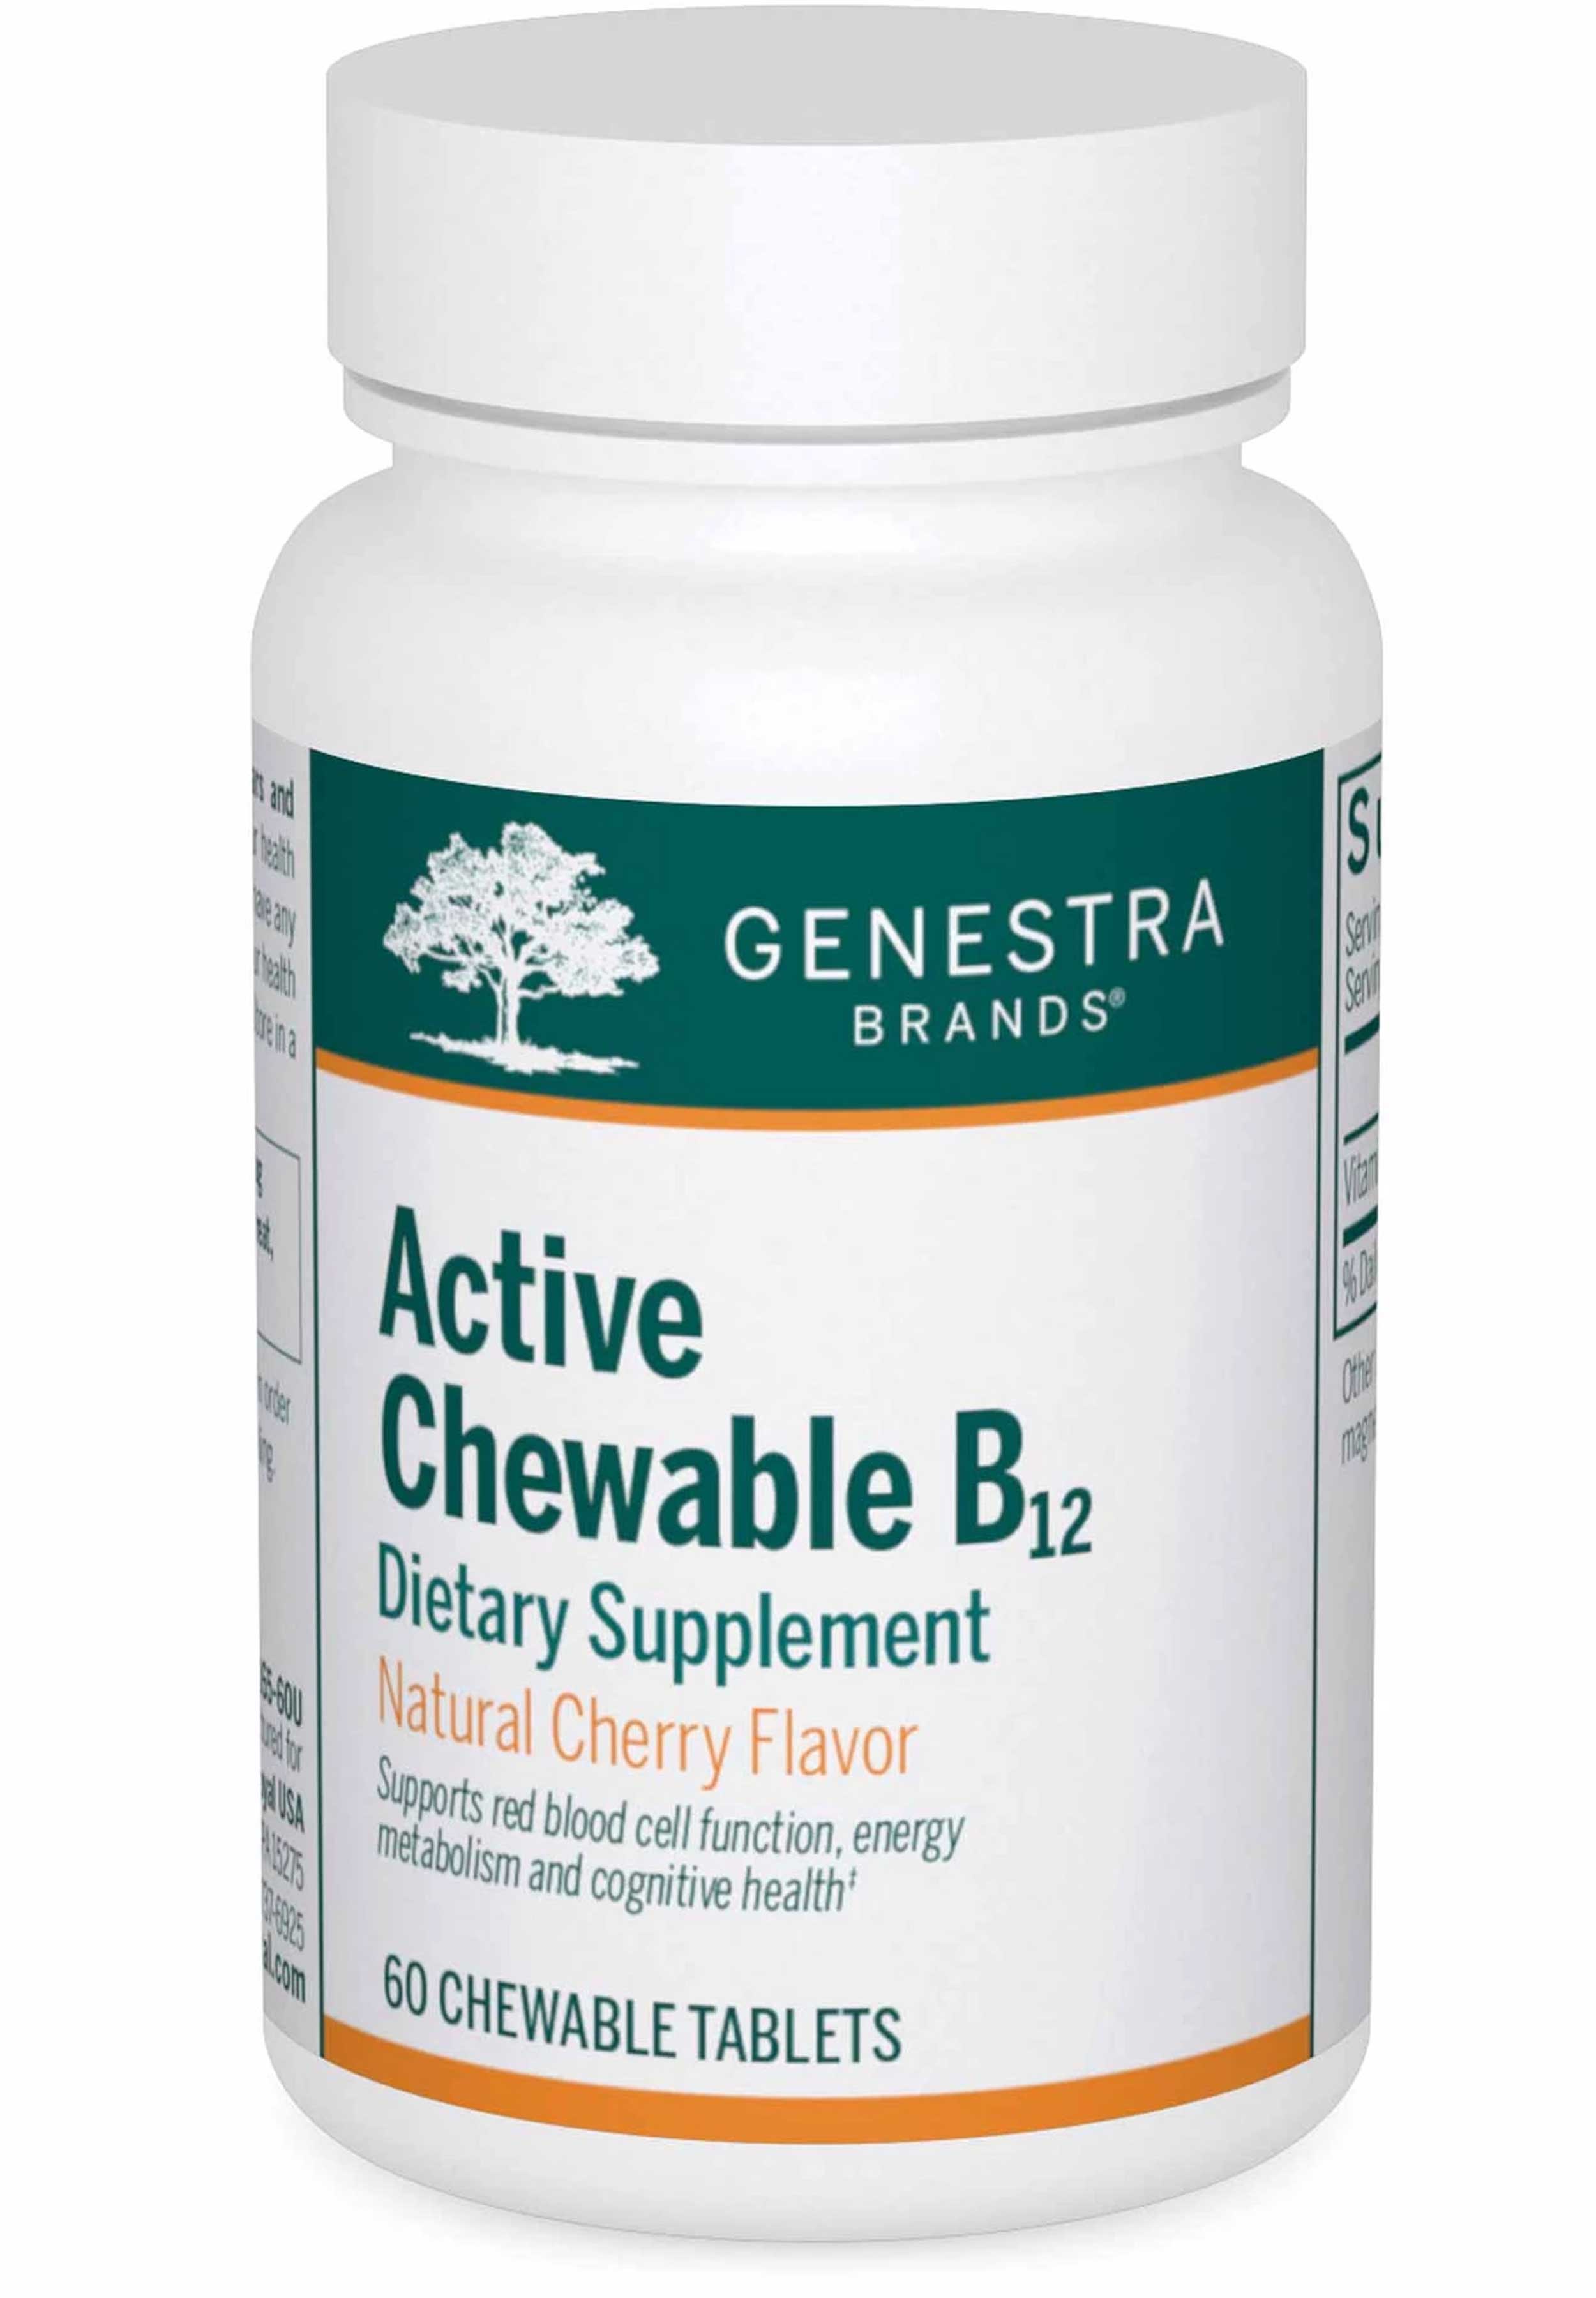 Genestra Brands Active Chewable B12